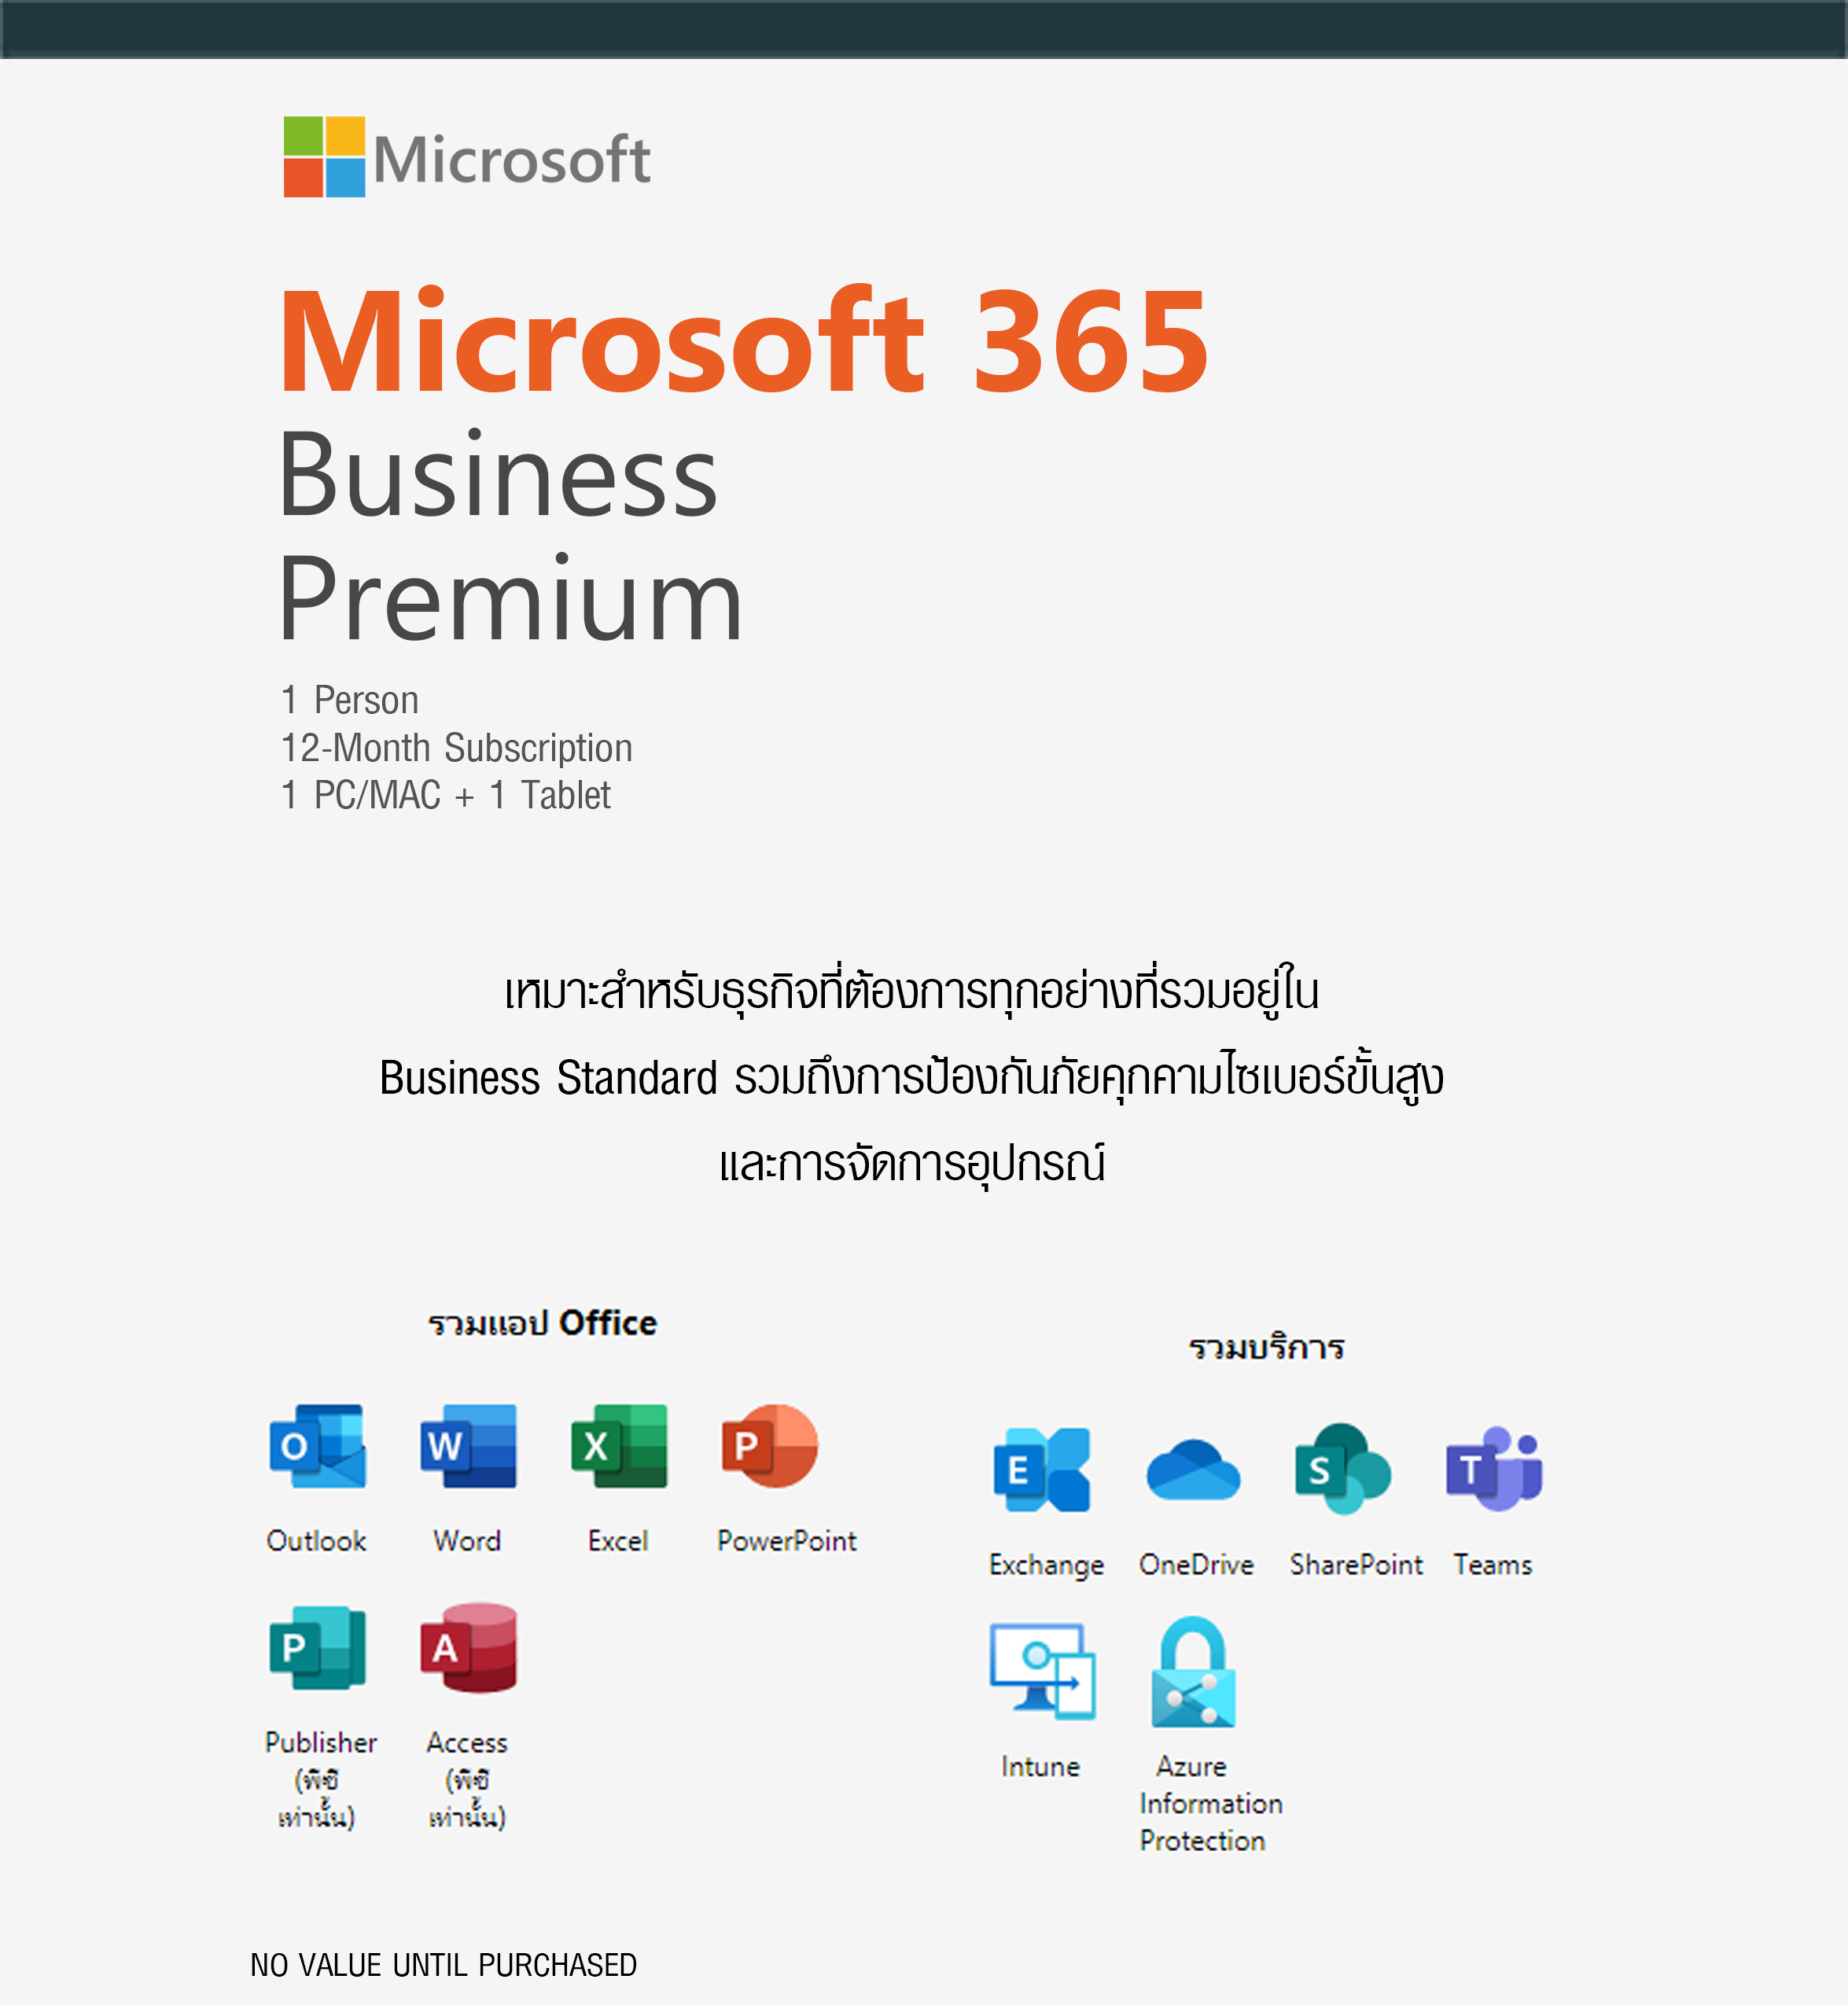 microsoft 365 business premium vs office 365 e3